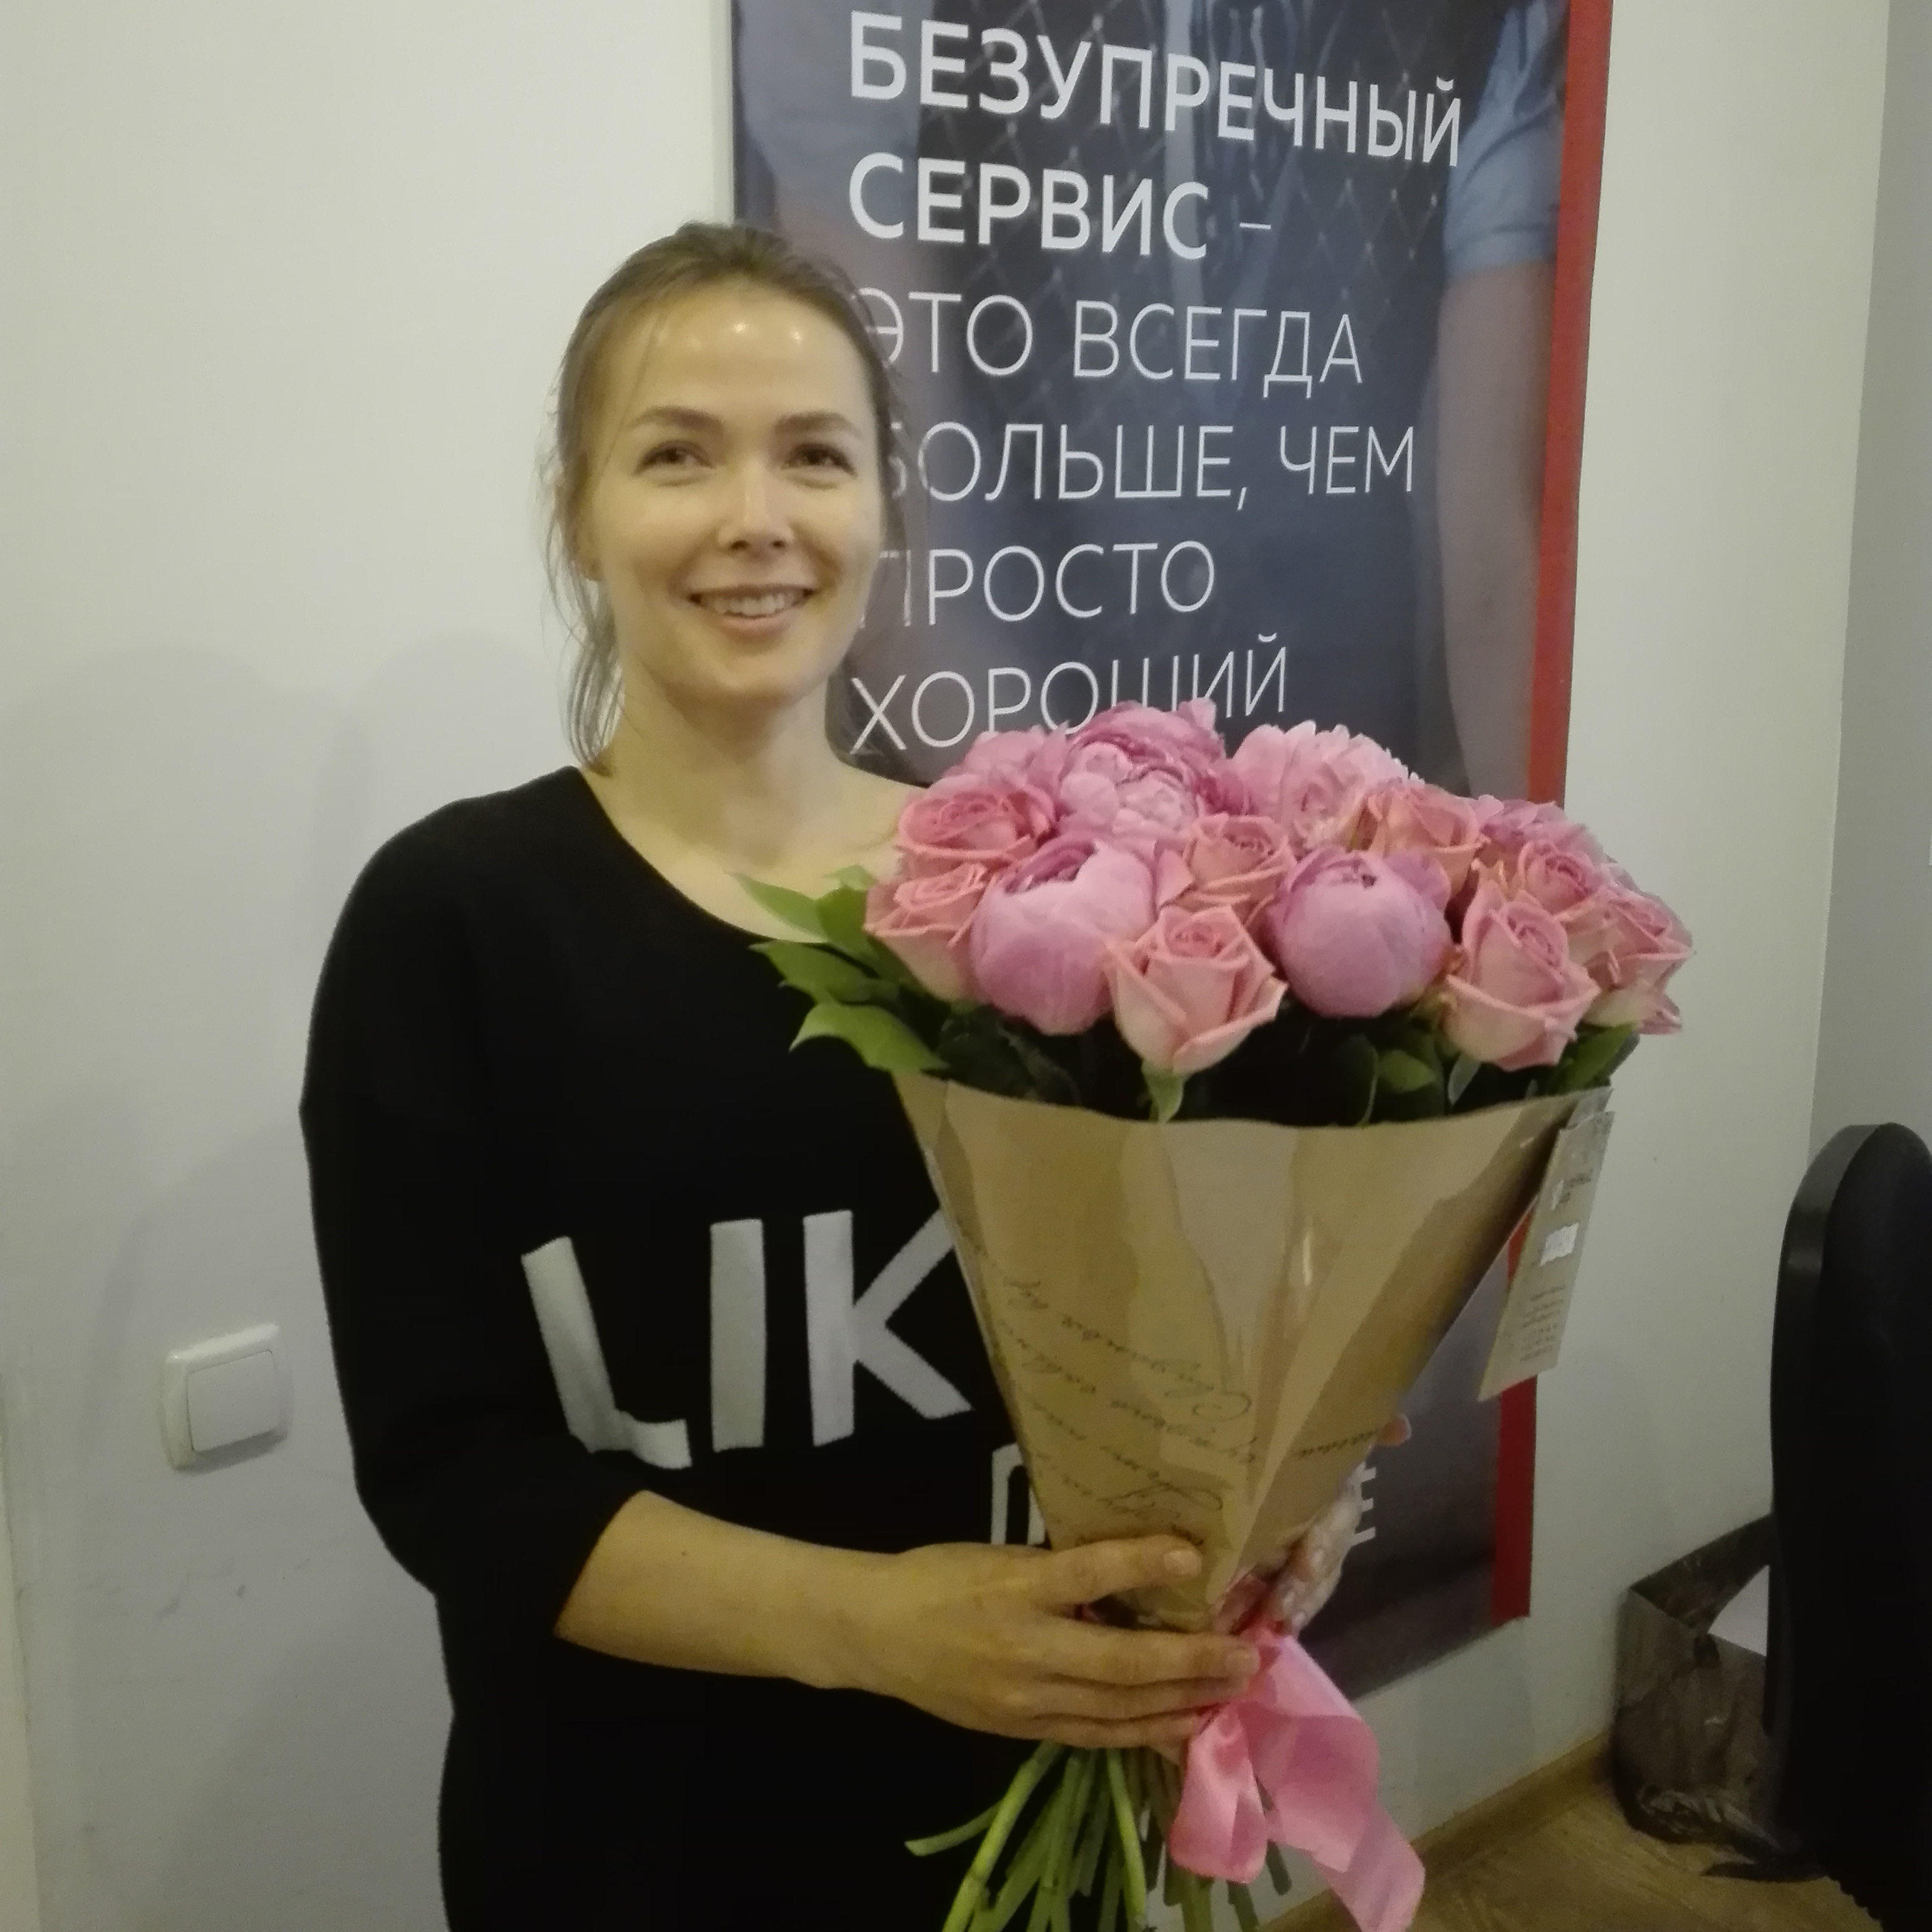 Фото доставленных цветов в Санкт-Петербурге